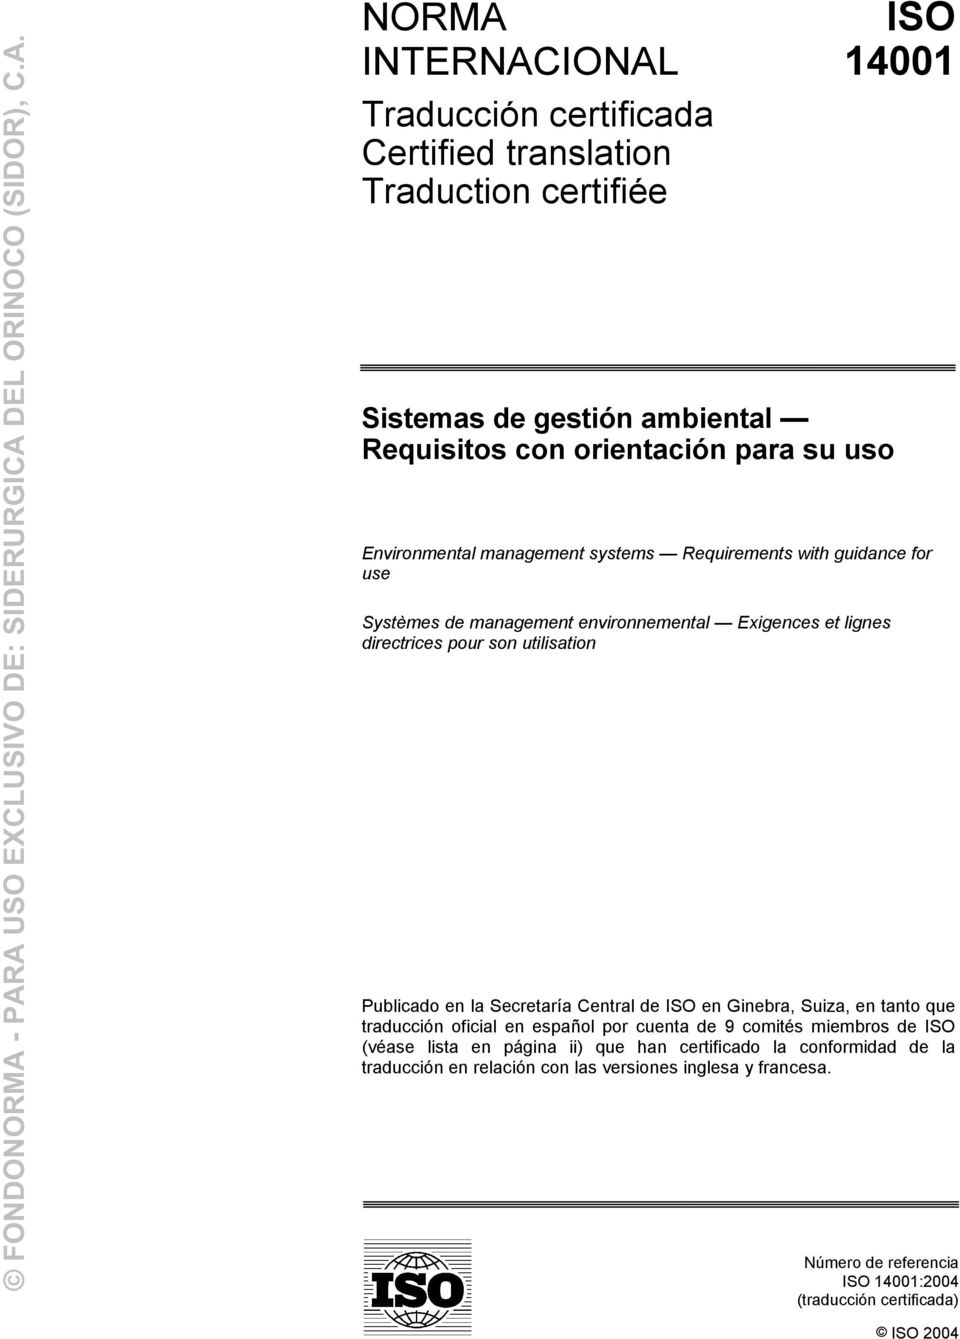 Publicado en la Secretaría Central de ISO en Ginebra, Suiza, en tanto que traducción oficial en español por cuenta de 9 comités miembros de ISO (véase lista en página